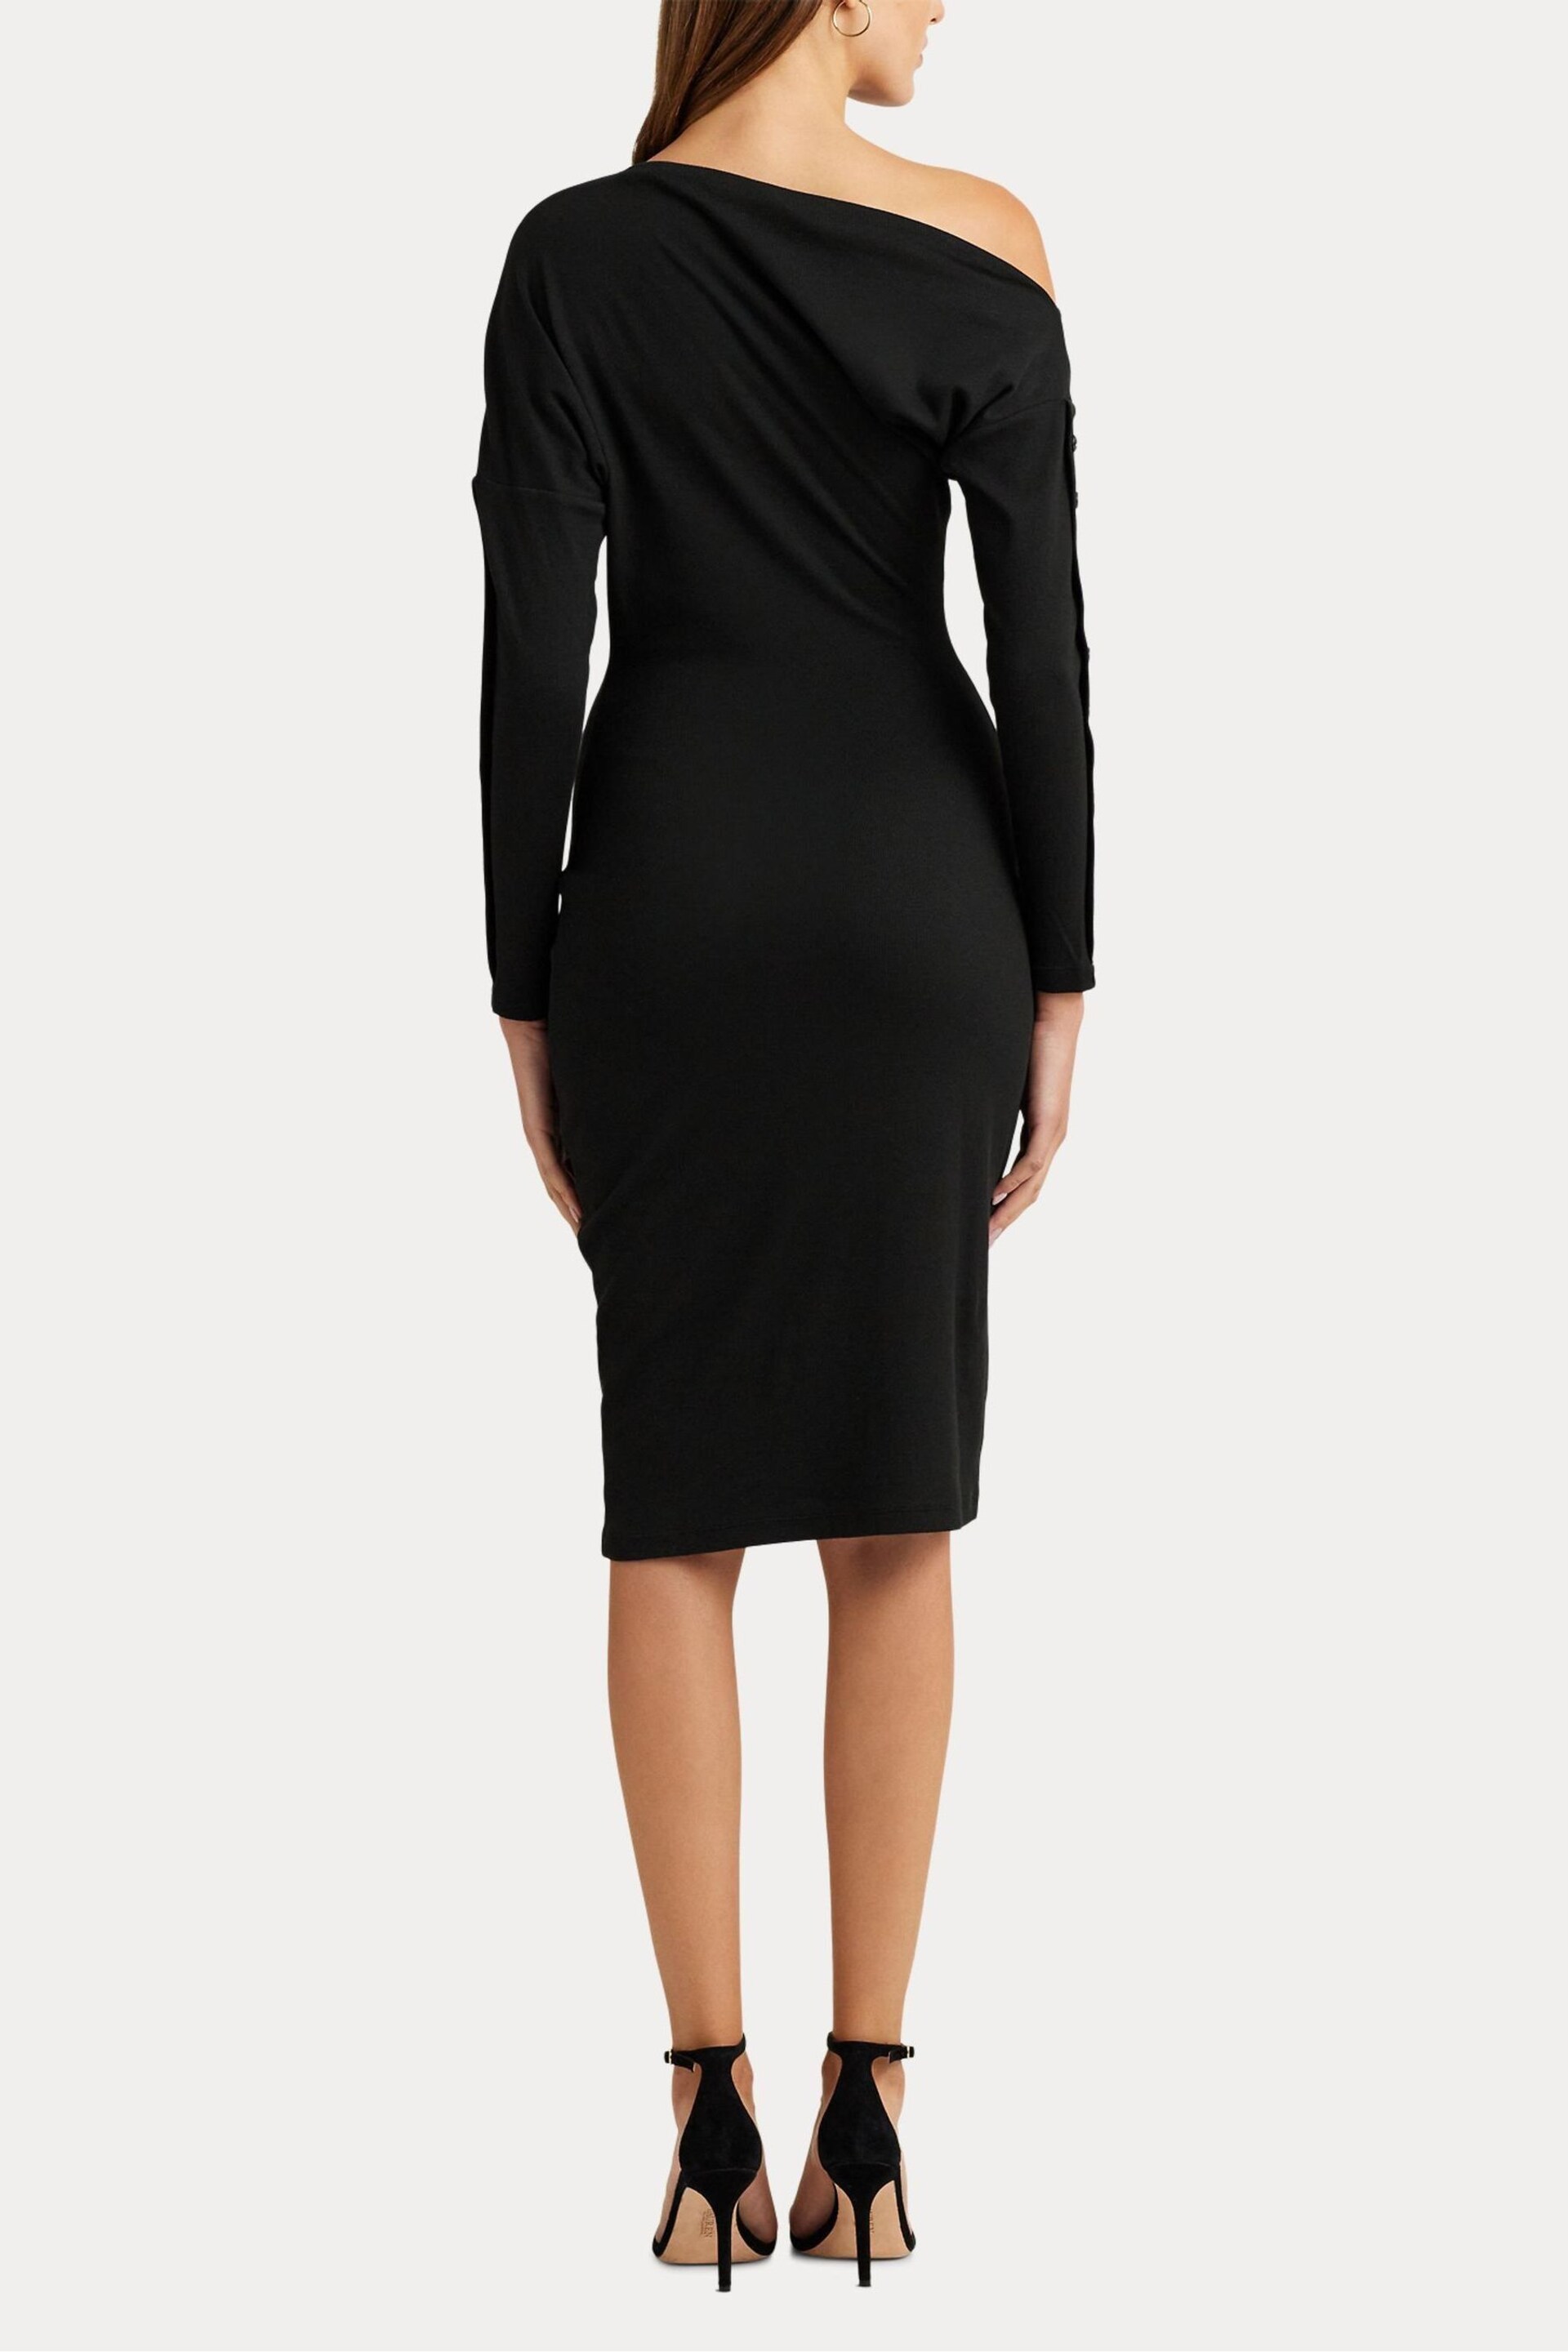 Lauren Ralph Lauren Black Yaslee Dress - Image 6 of 9